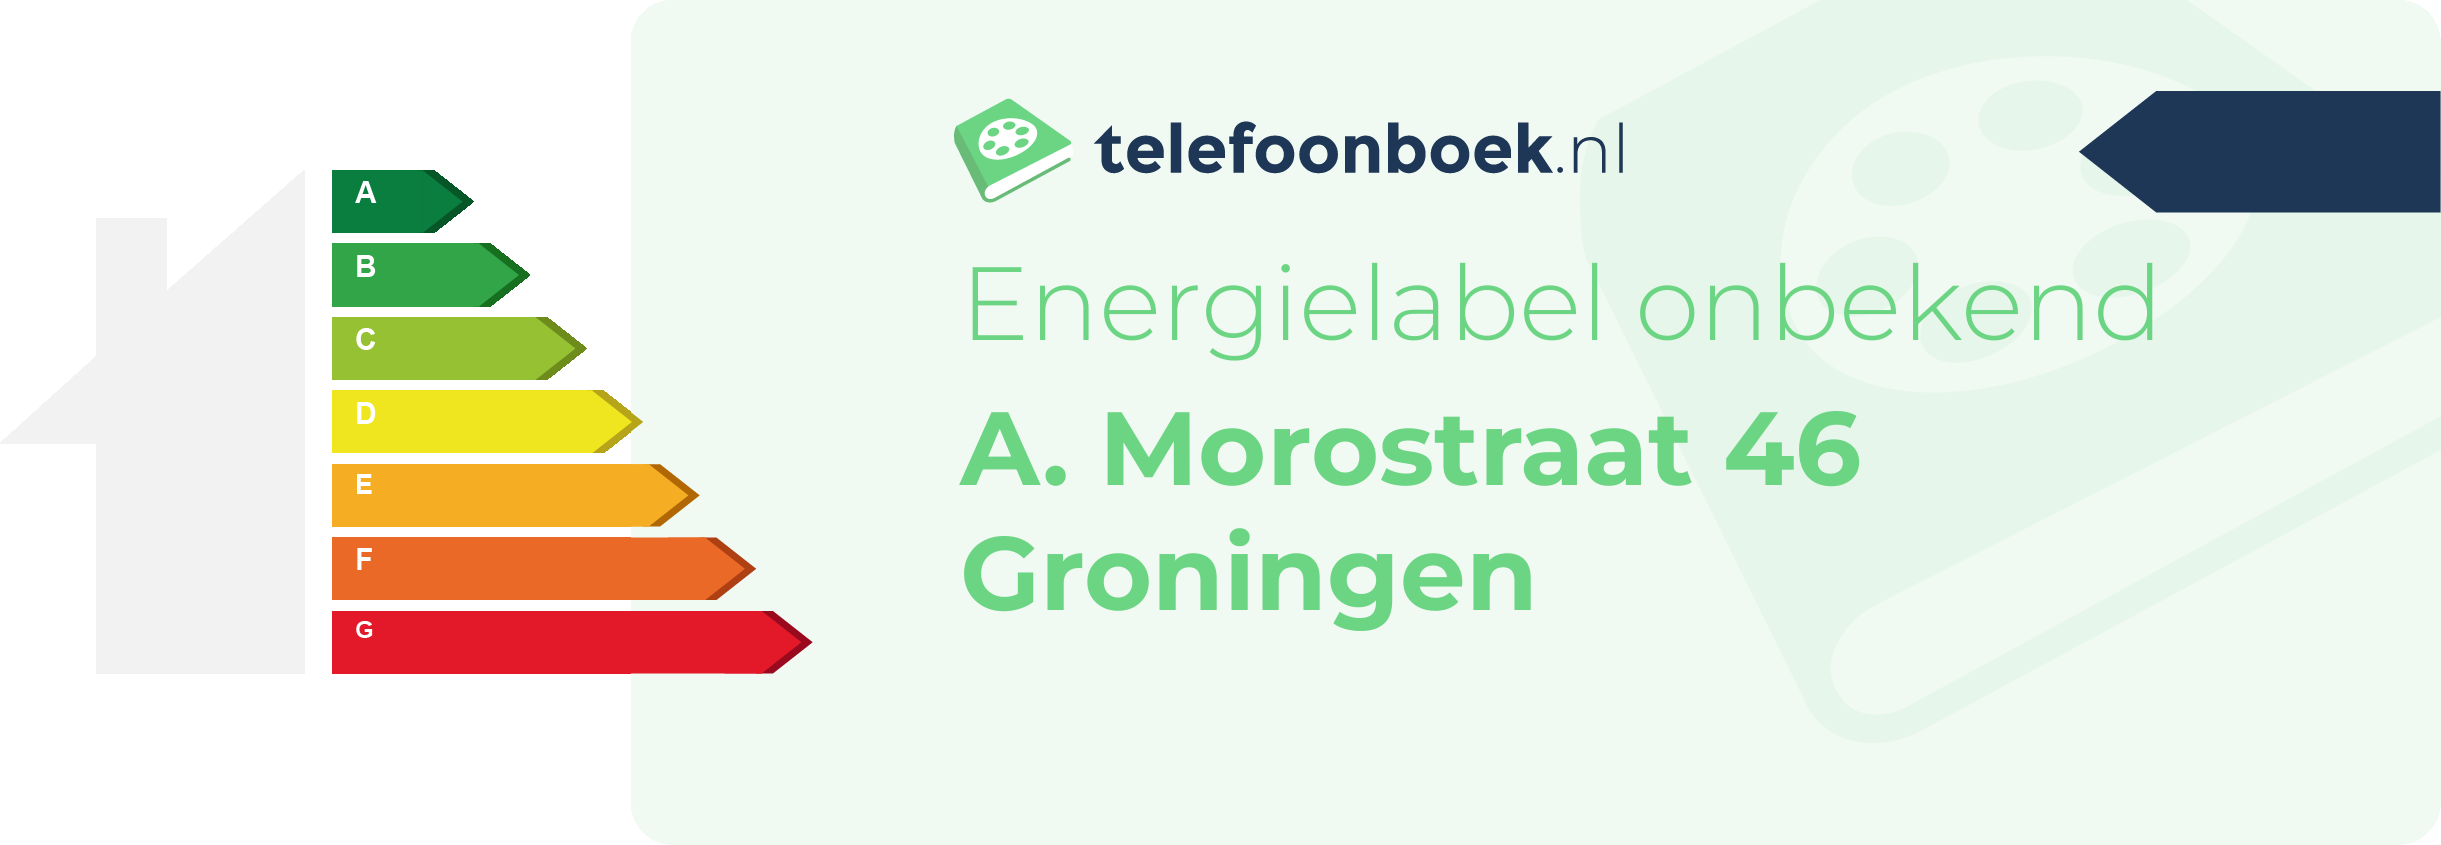 Energielabel A. Morostraat 46 Groningen